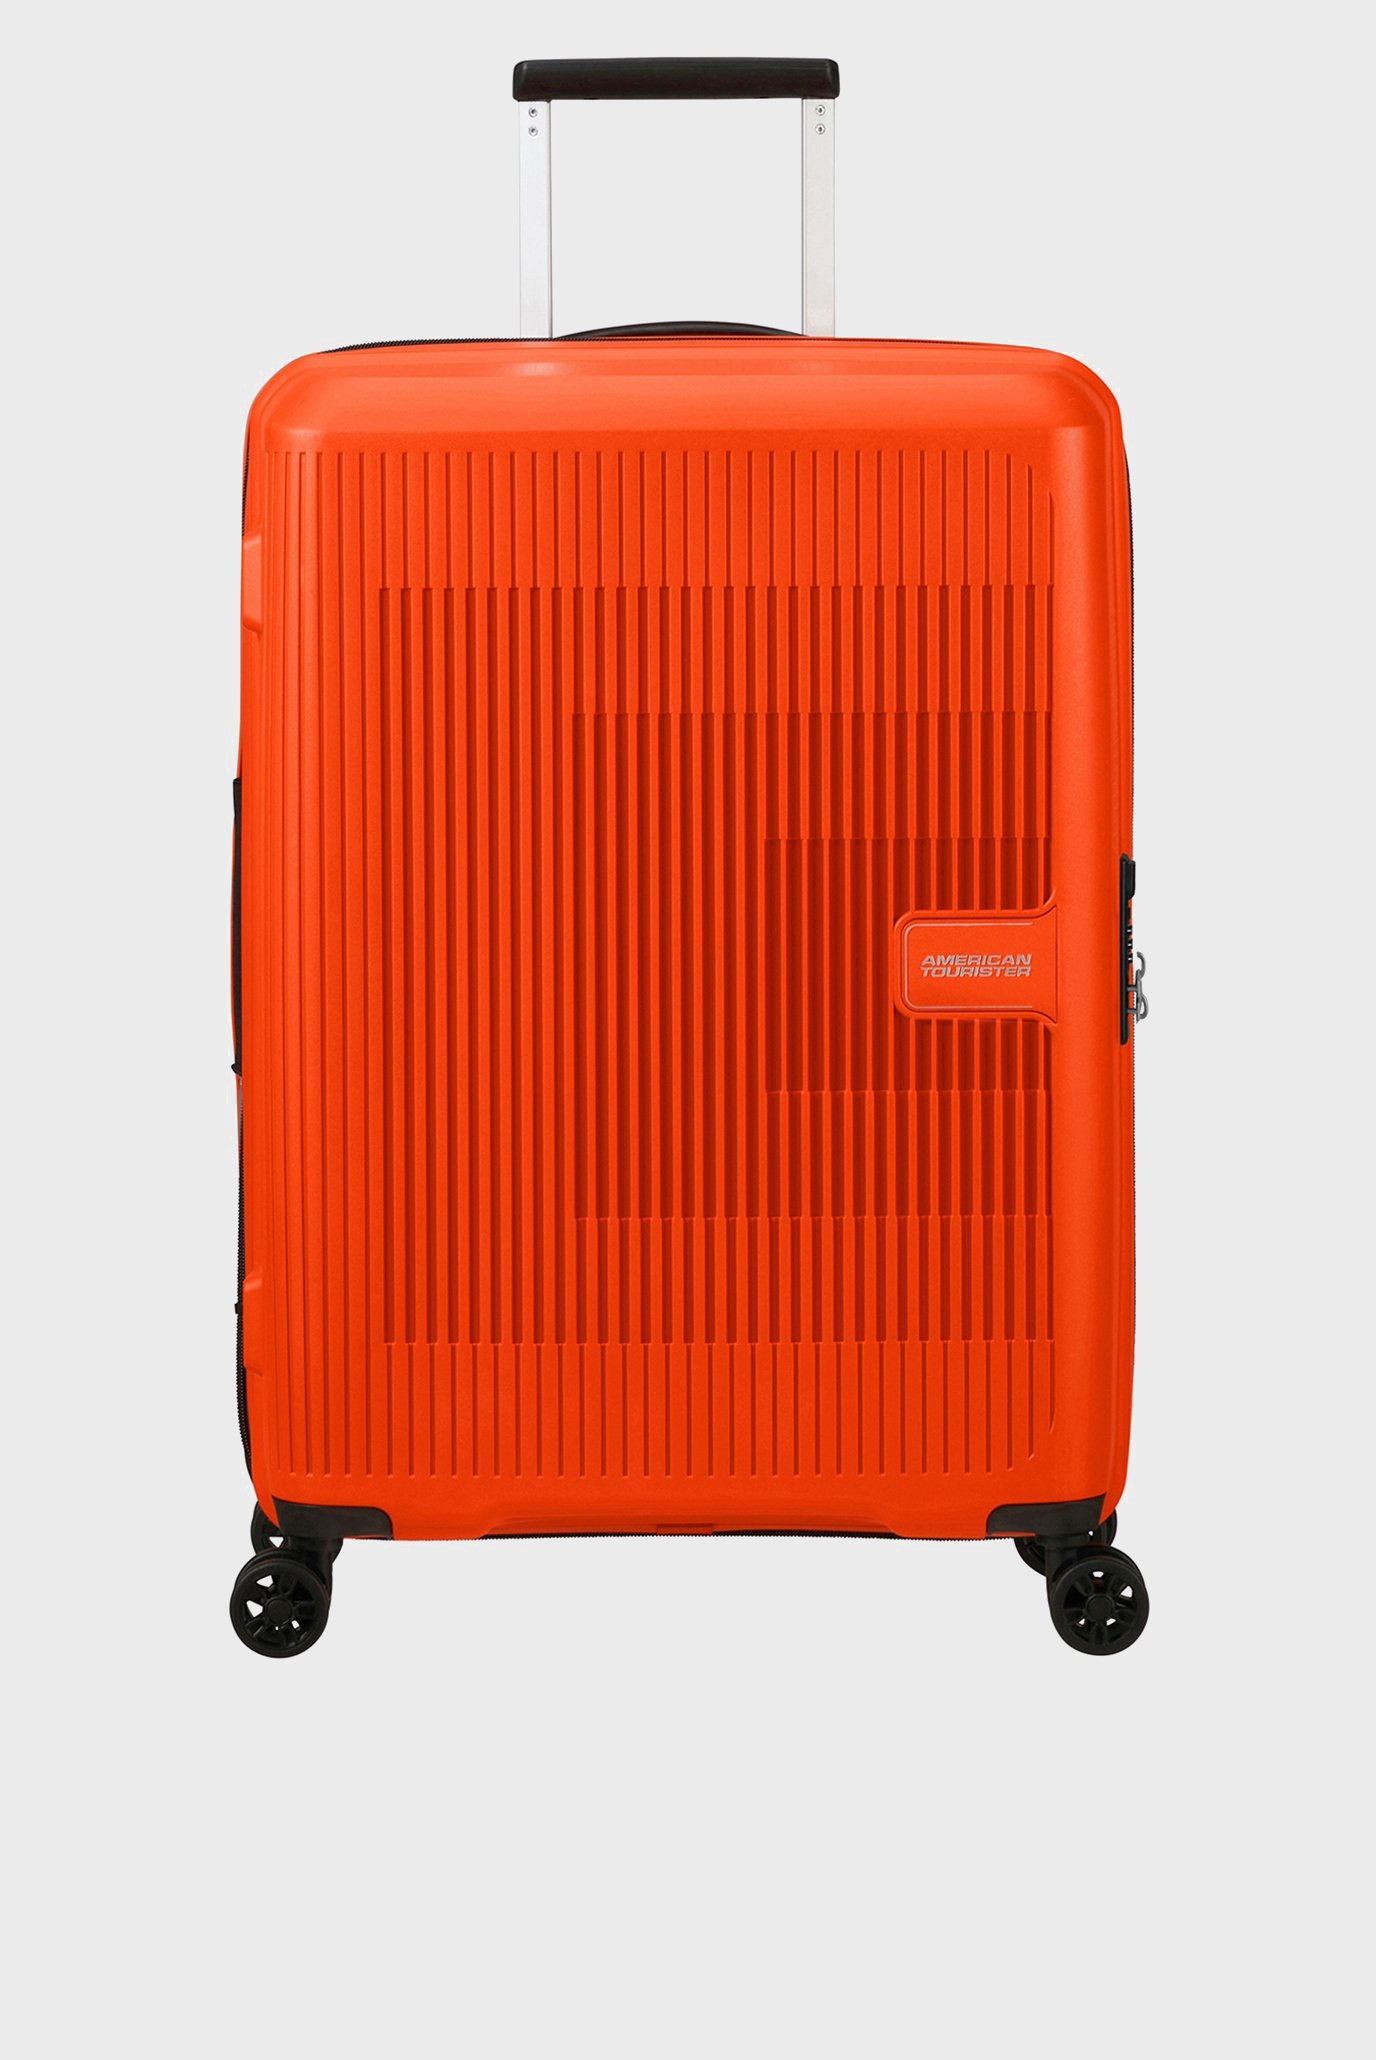 Оранжевый чемодан 67 см AEROSTEP ORANGE 1